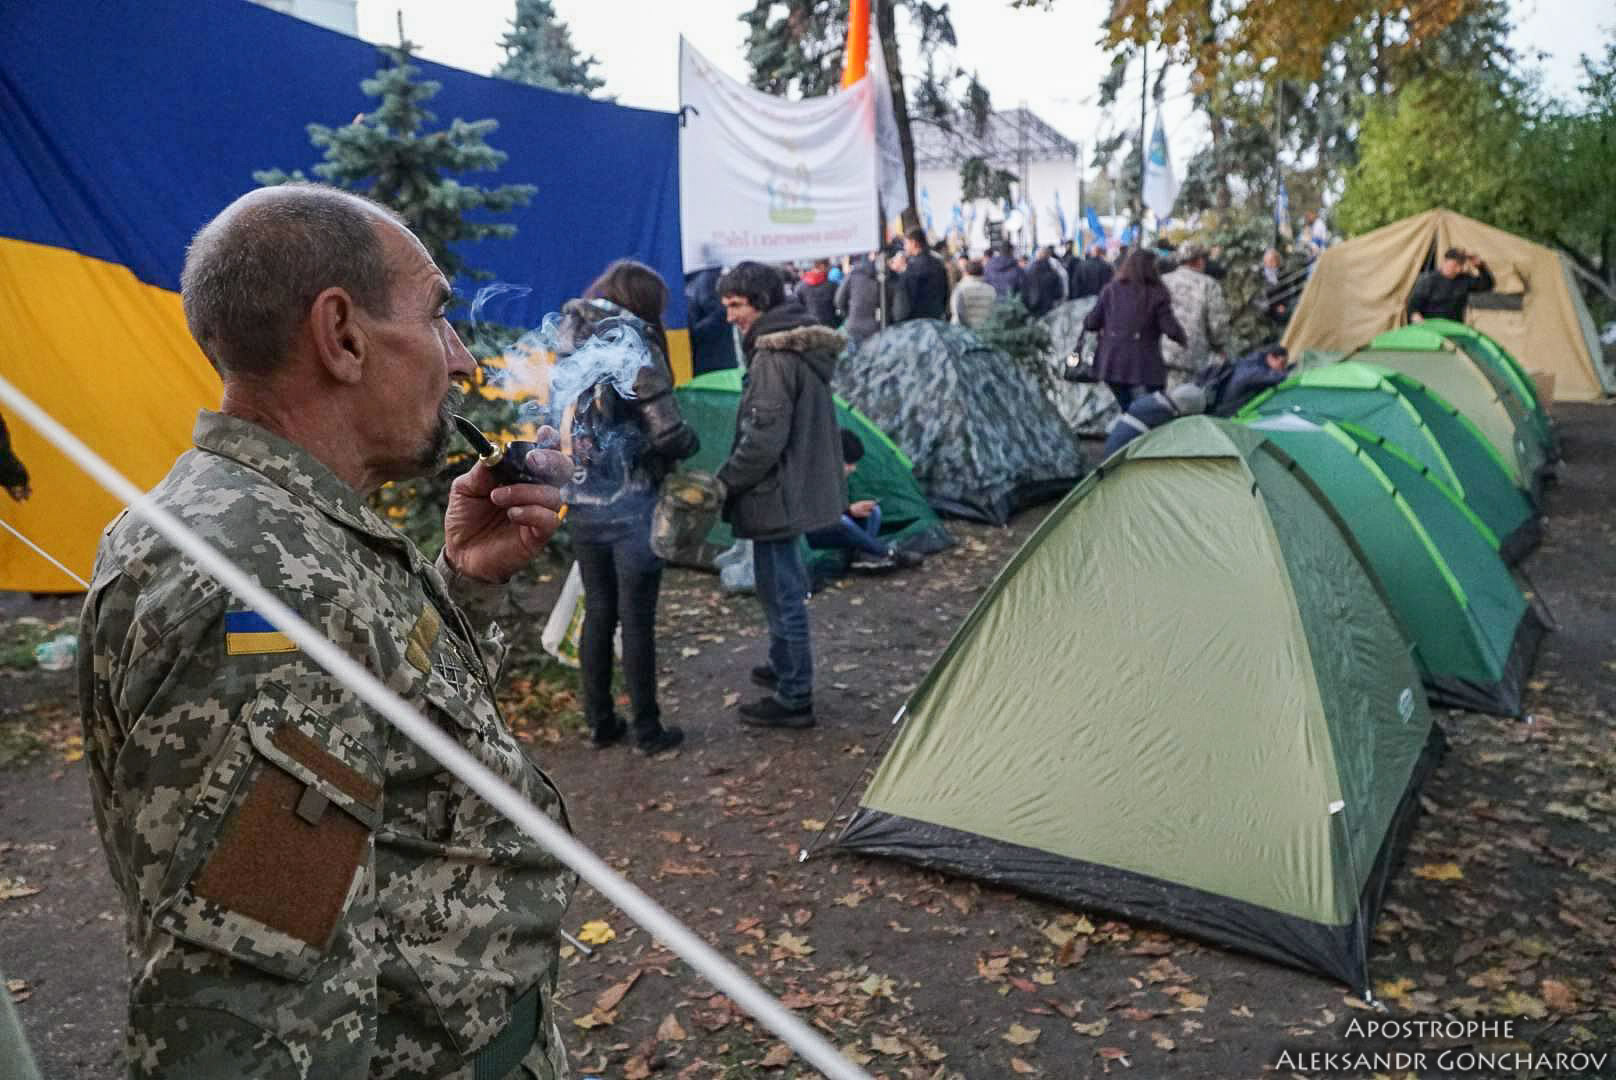 НОВЫЙ МАЙДАН? В центре Киева выставляют палатки. Акция протеста продолжается